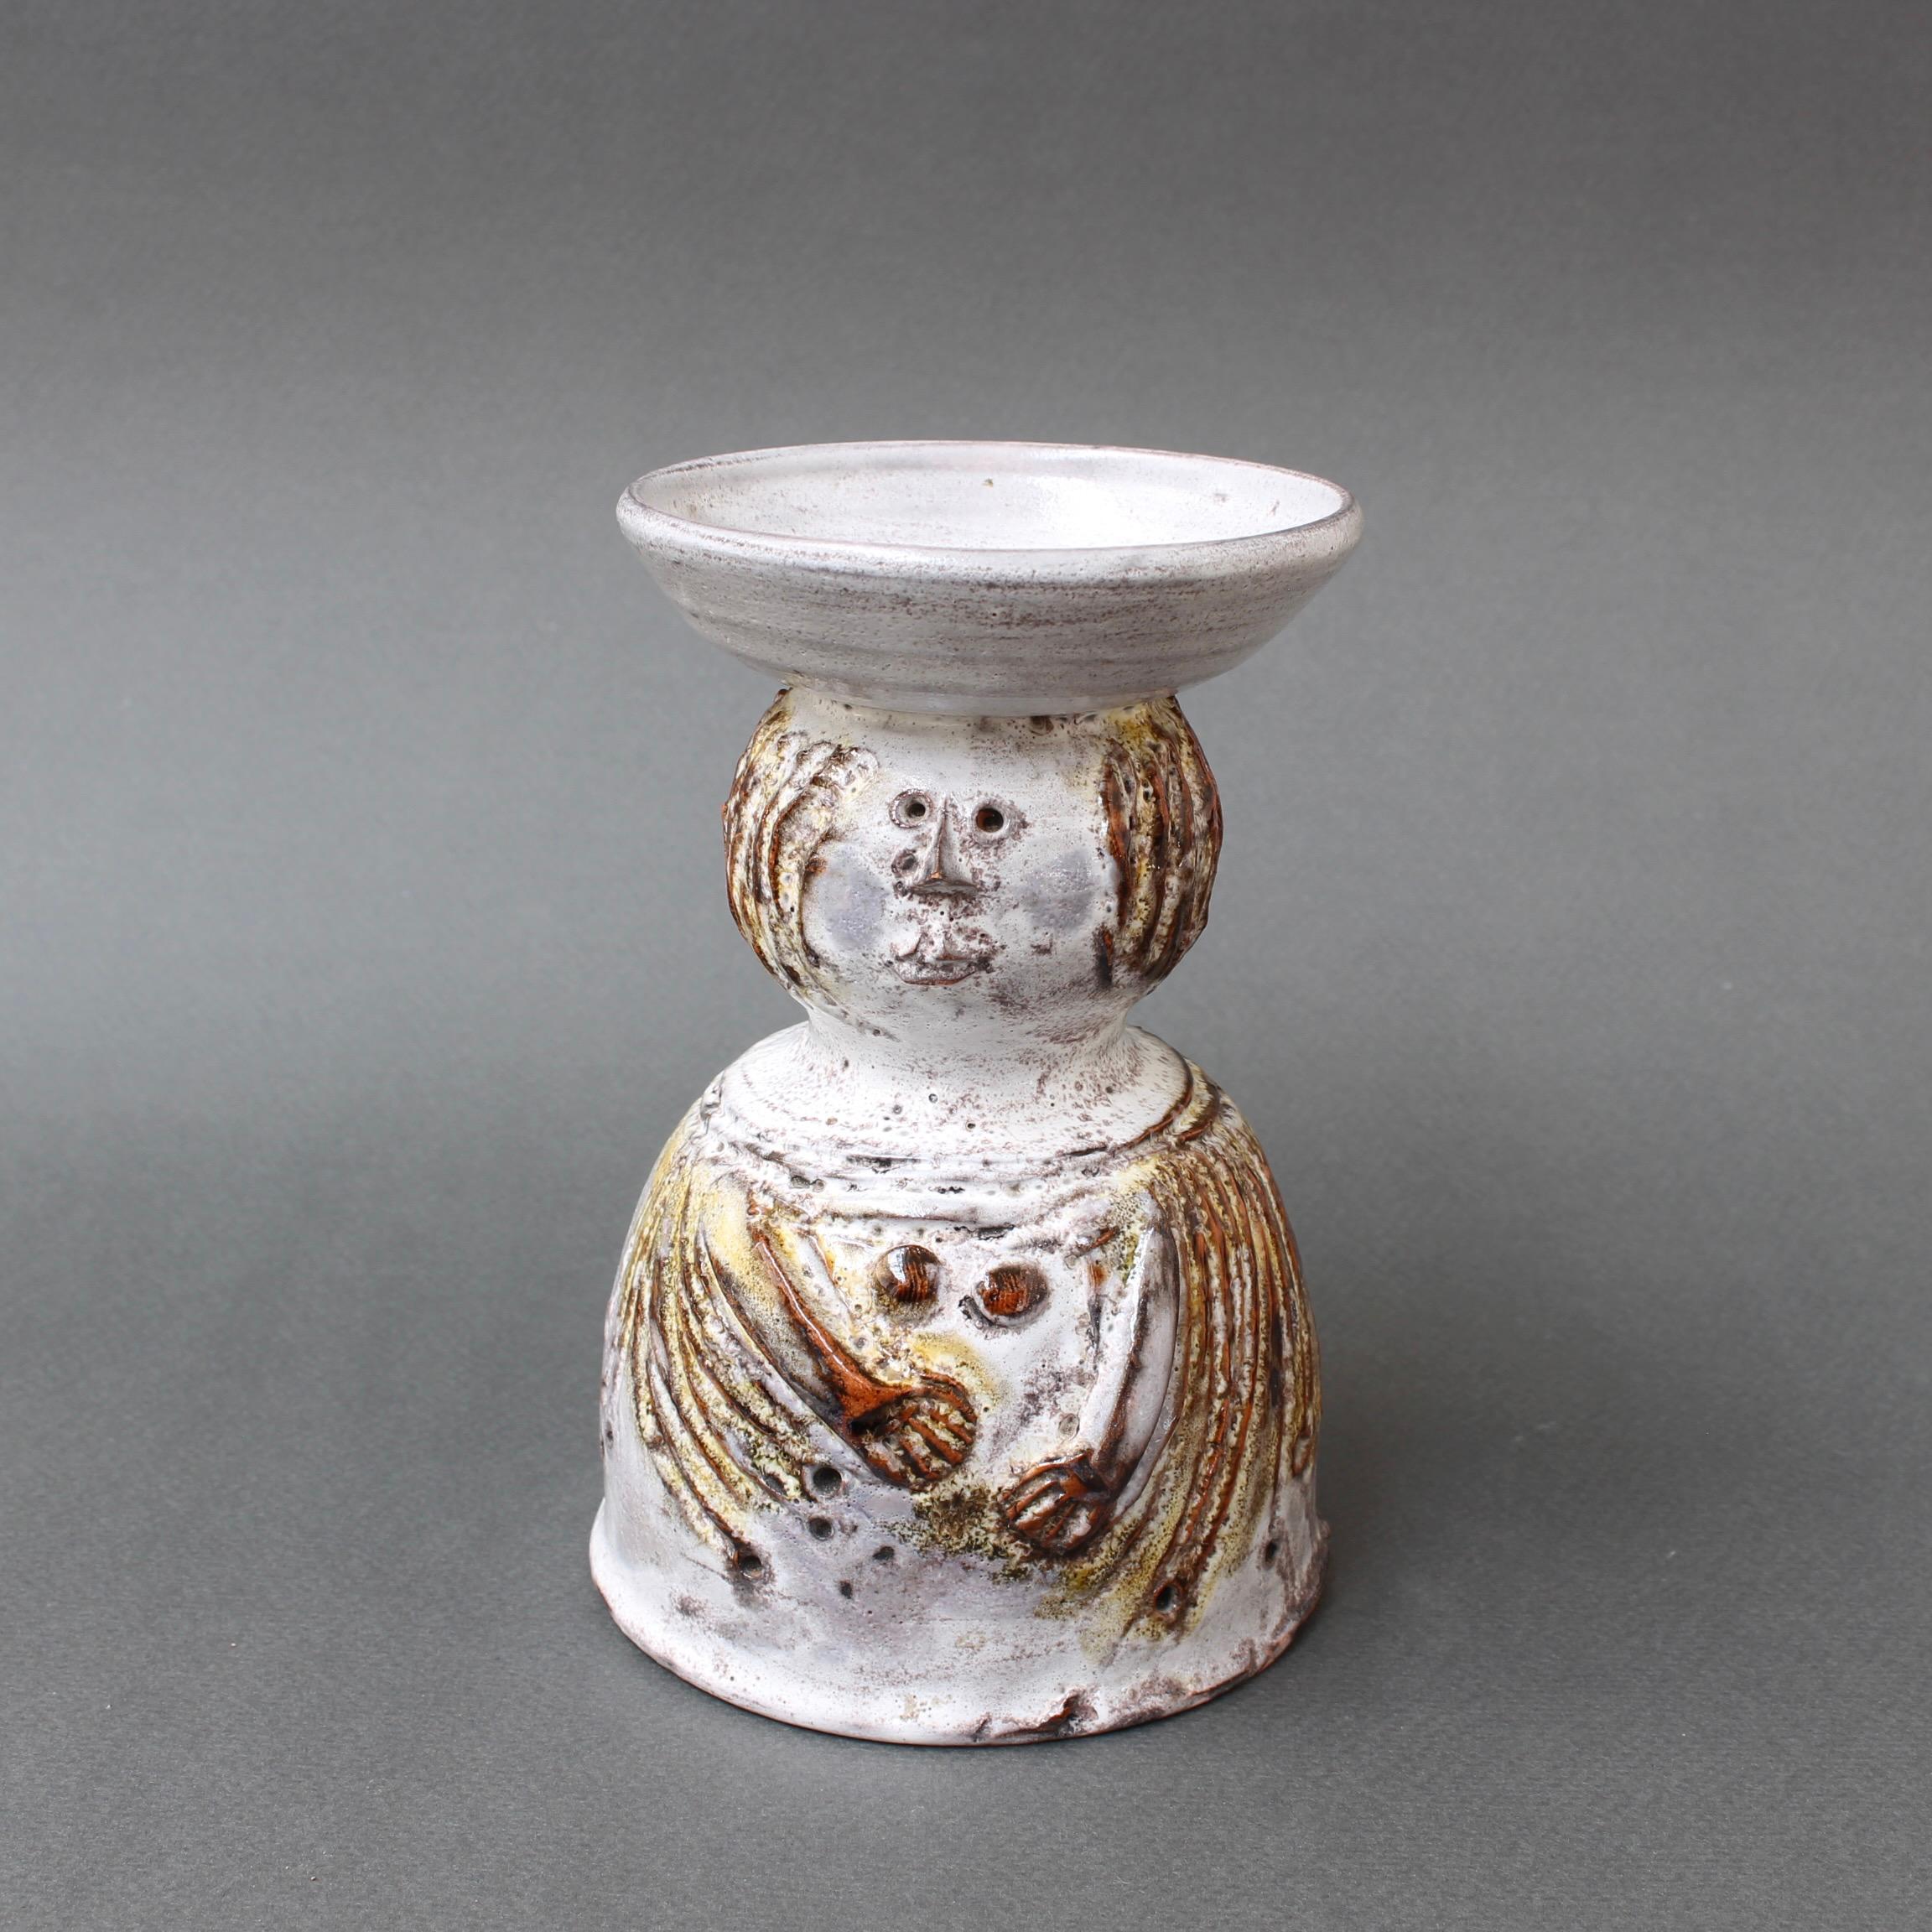 Vase monofloral en céramique française de Pierre Koppe (vers 1970). Un corps en céramique en forme de femme au regard fantaisiste. Il serait parfait comme objet décoratif dans la maison ou comme vase à fleurs unique. C'est à la fois un plaisir